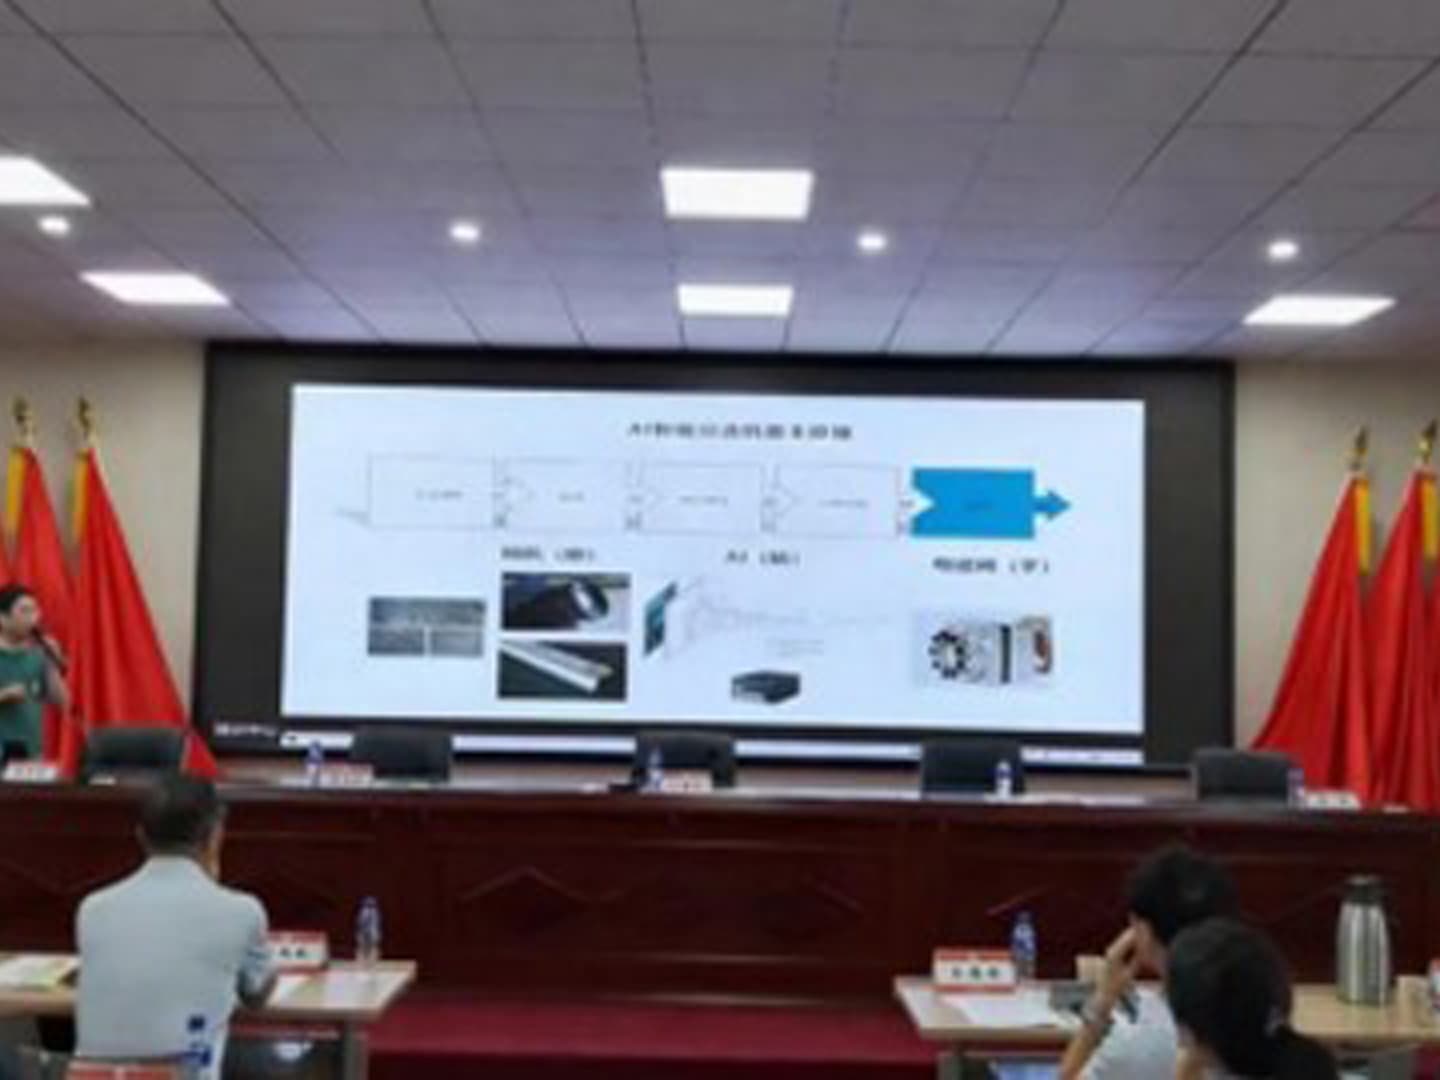 Shandong Gold tổ chức cuộc họp trao đổi công nghệ chế biến khoáng sản Mingde được mời